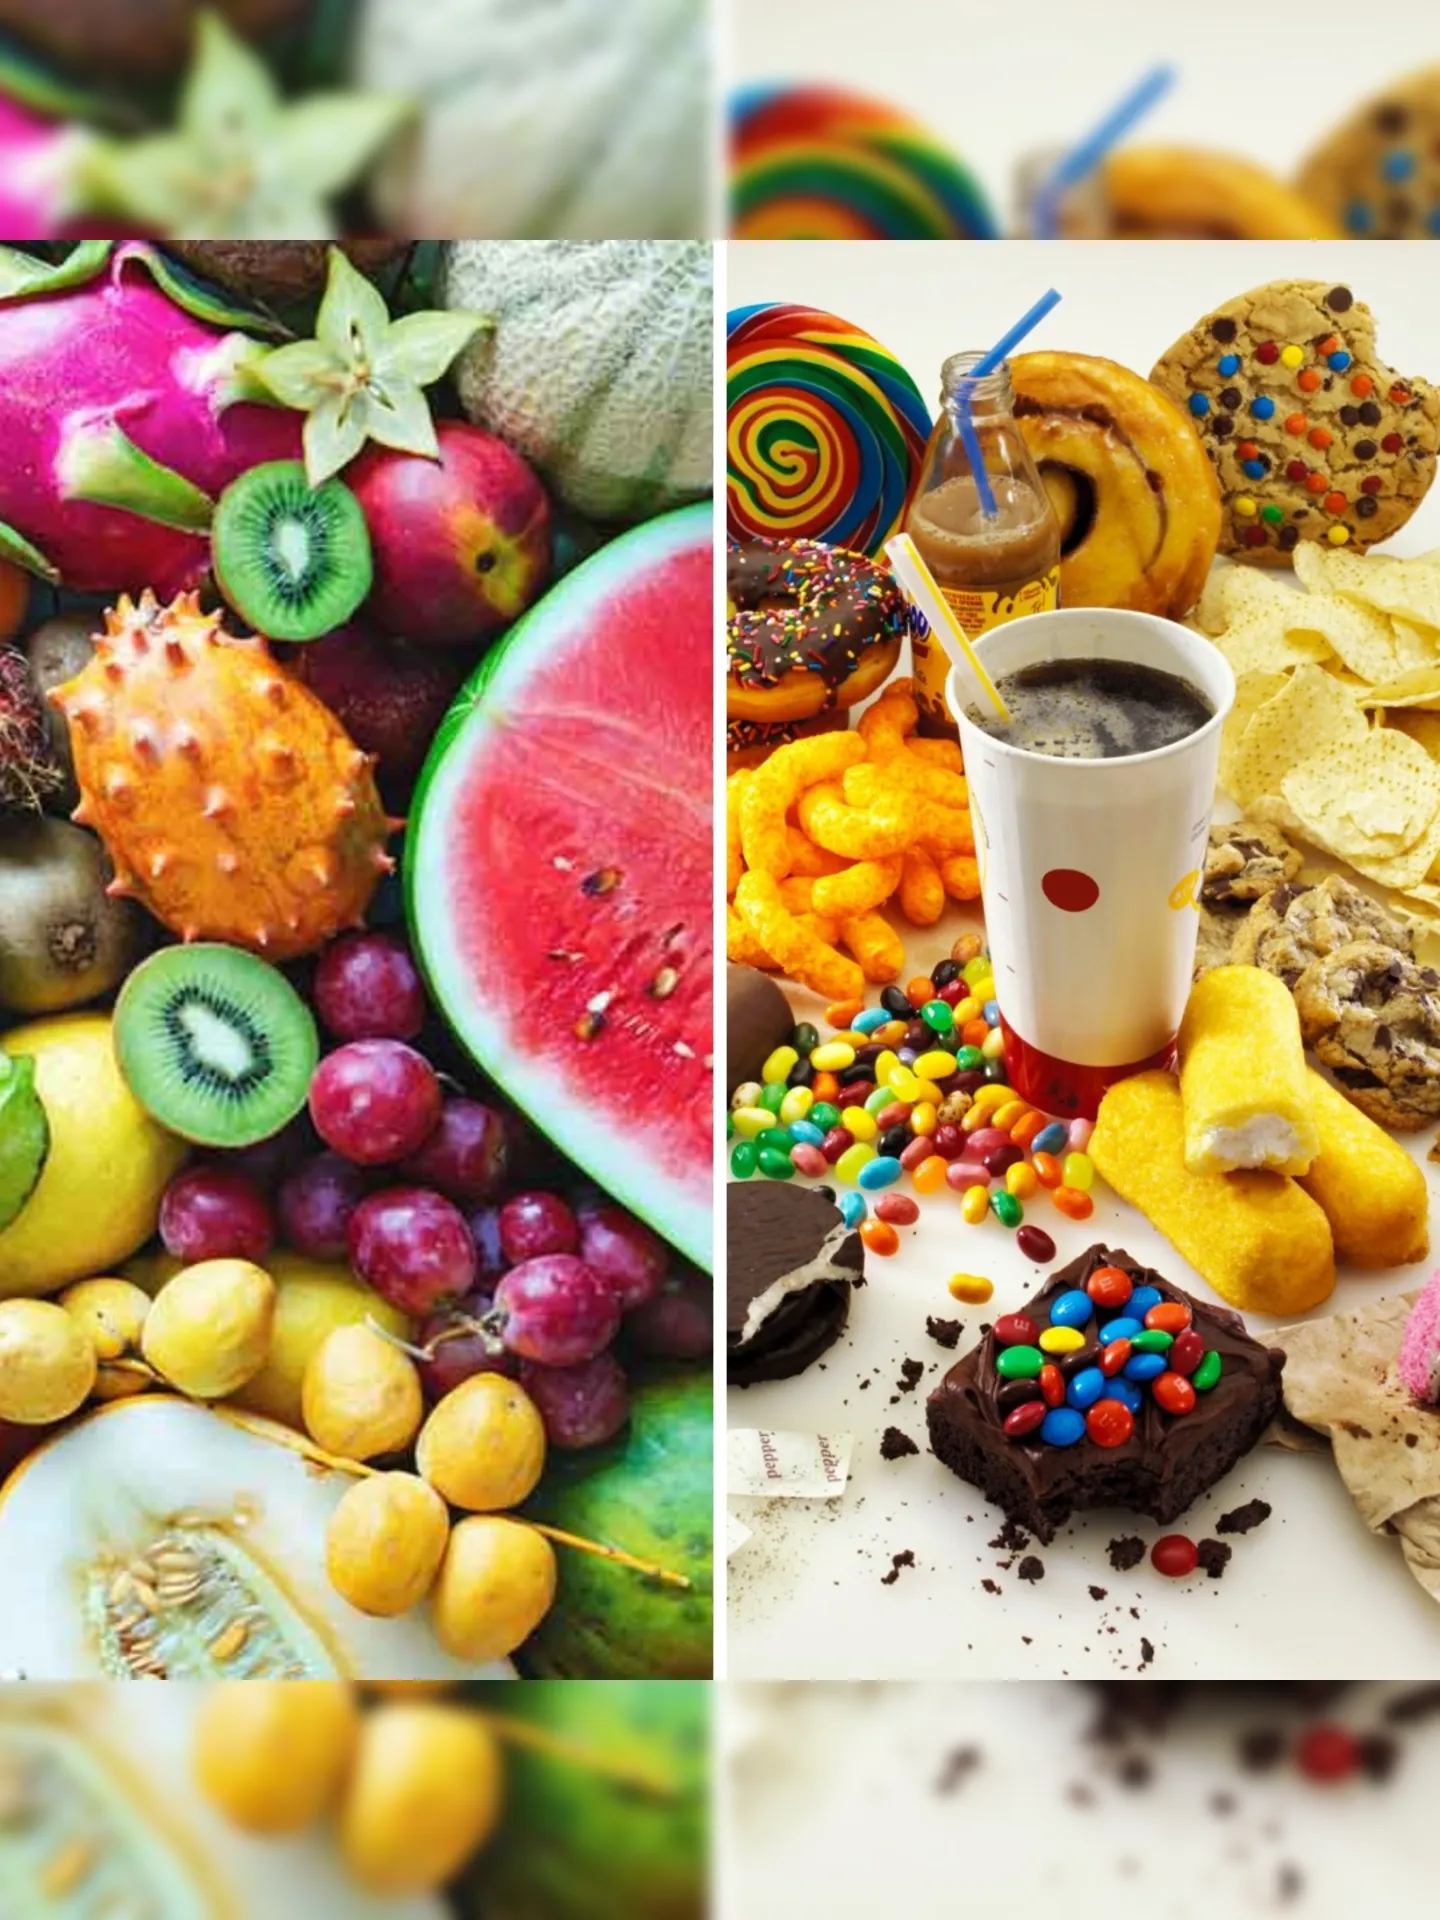 Todos esses alimentos citados - da melancia à salsicha - tem um componente em comum: a frutose.